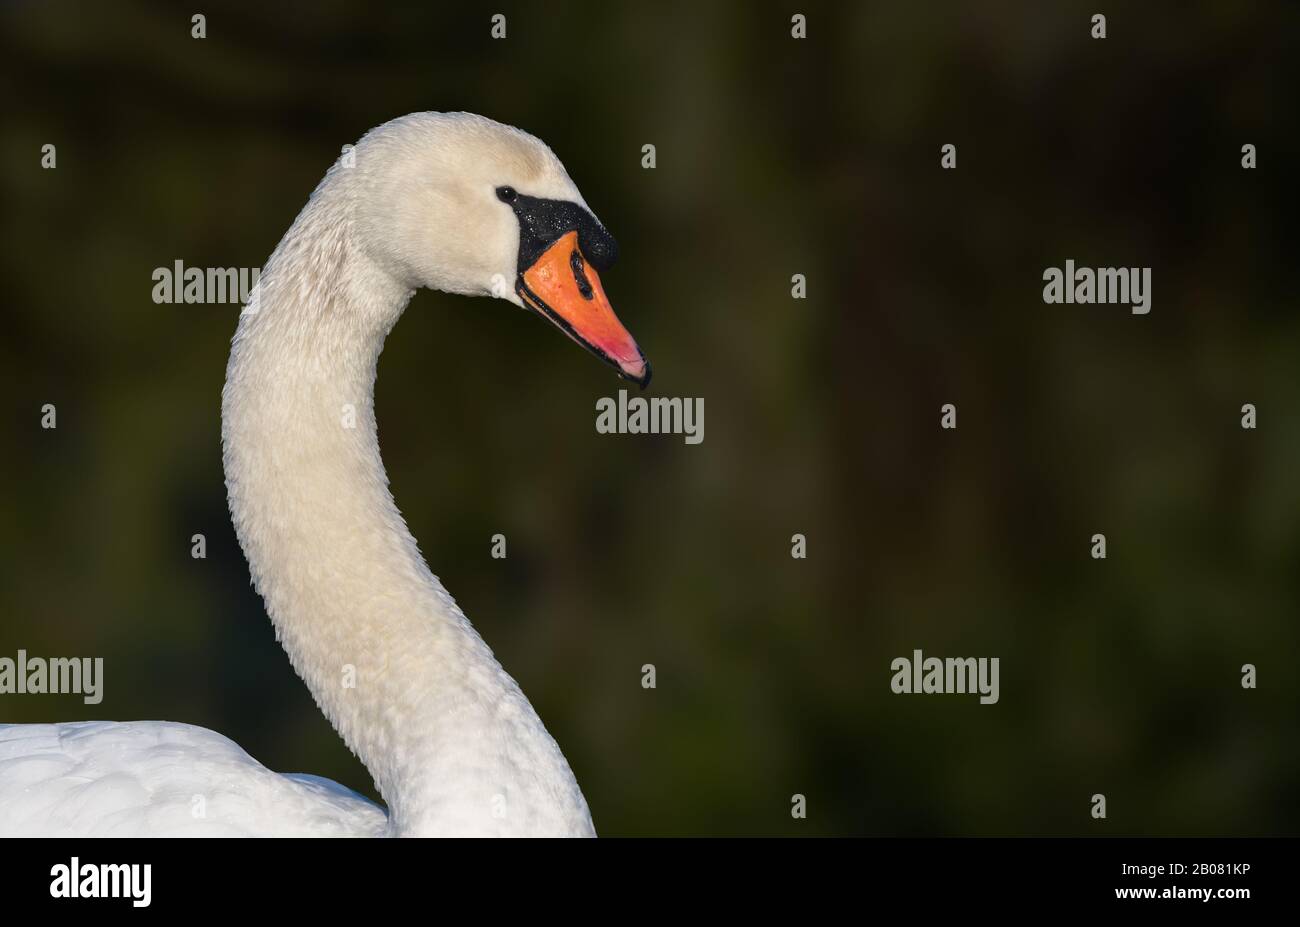 White Mute Swan (Cygnus olor) tête et cou, vue latérale, avec espace de copie. Banque D'Images